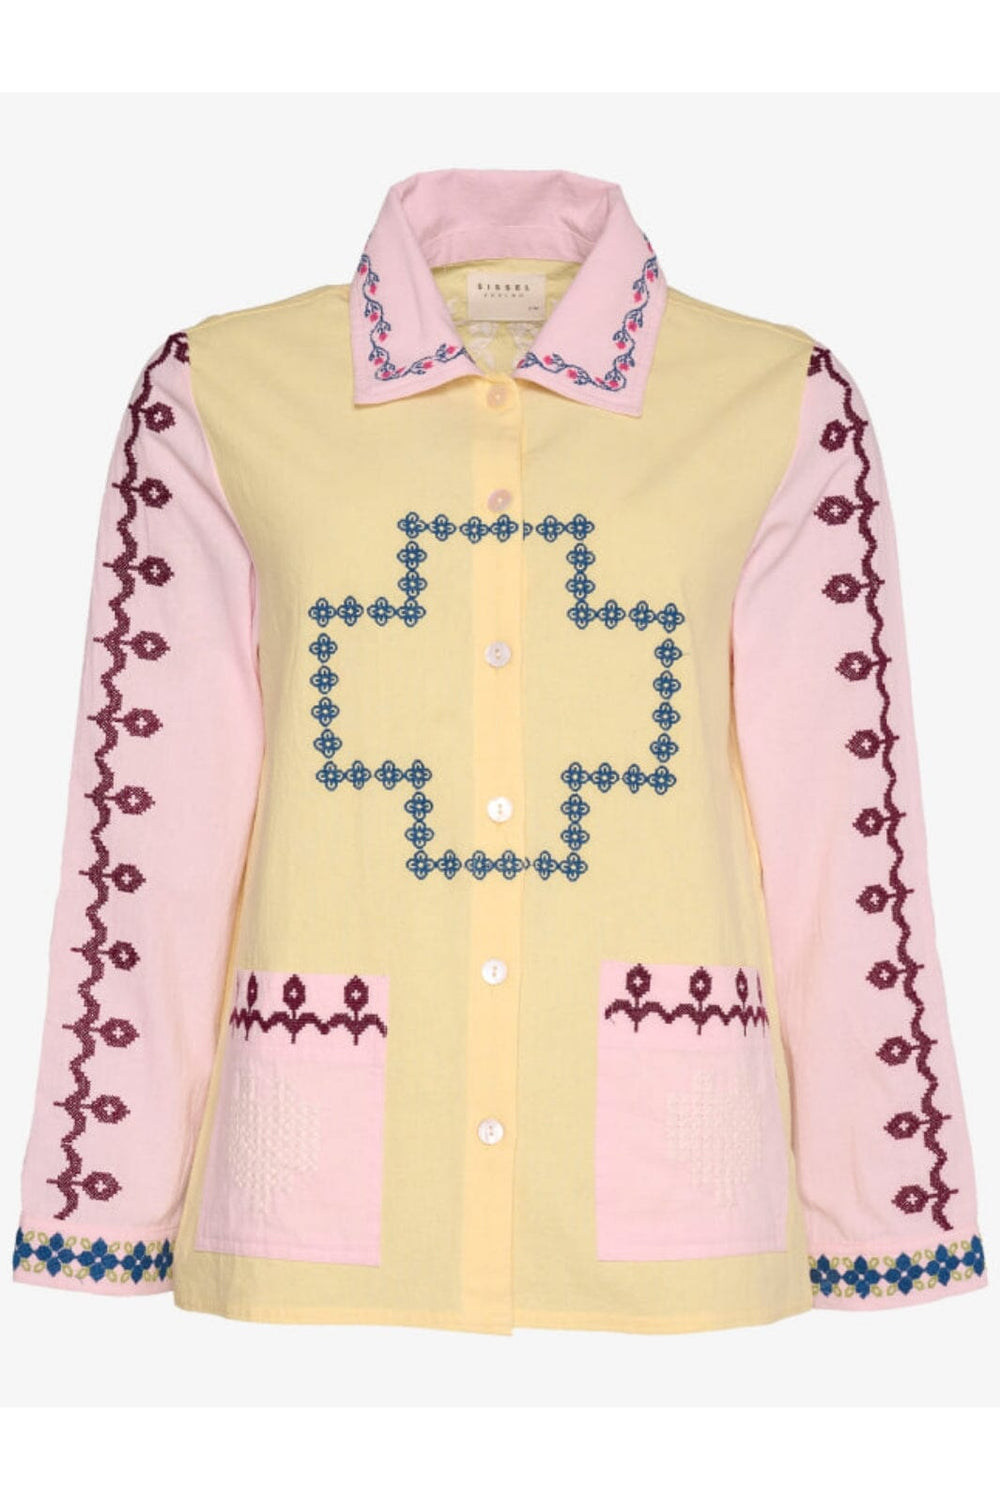 Forudbestilling - Sissel Edelbo - Louise Organic Cotton Shirt SE 1204 - Pastel Skjorter 